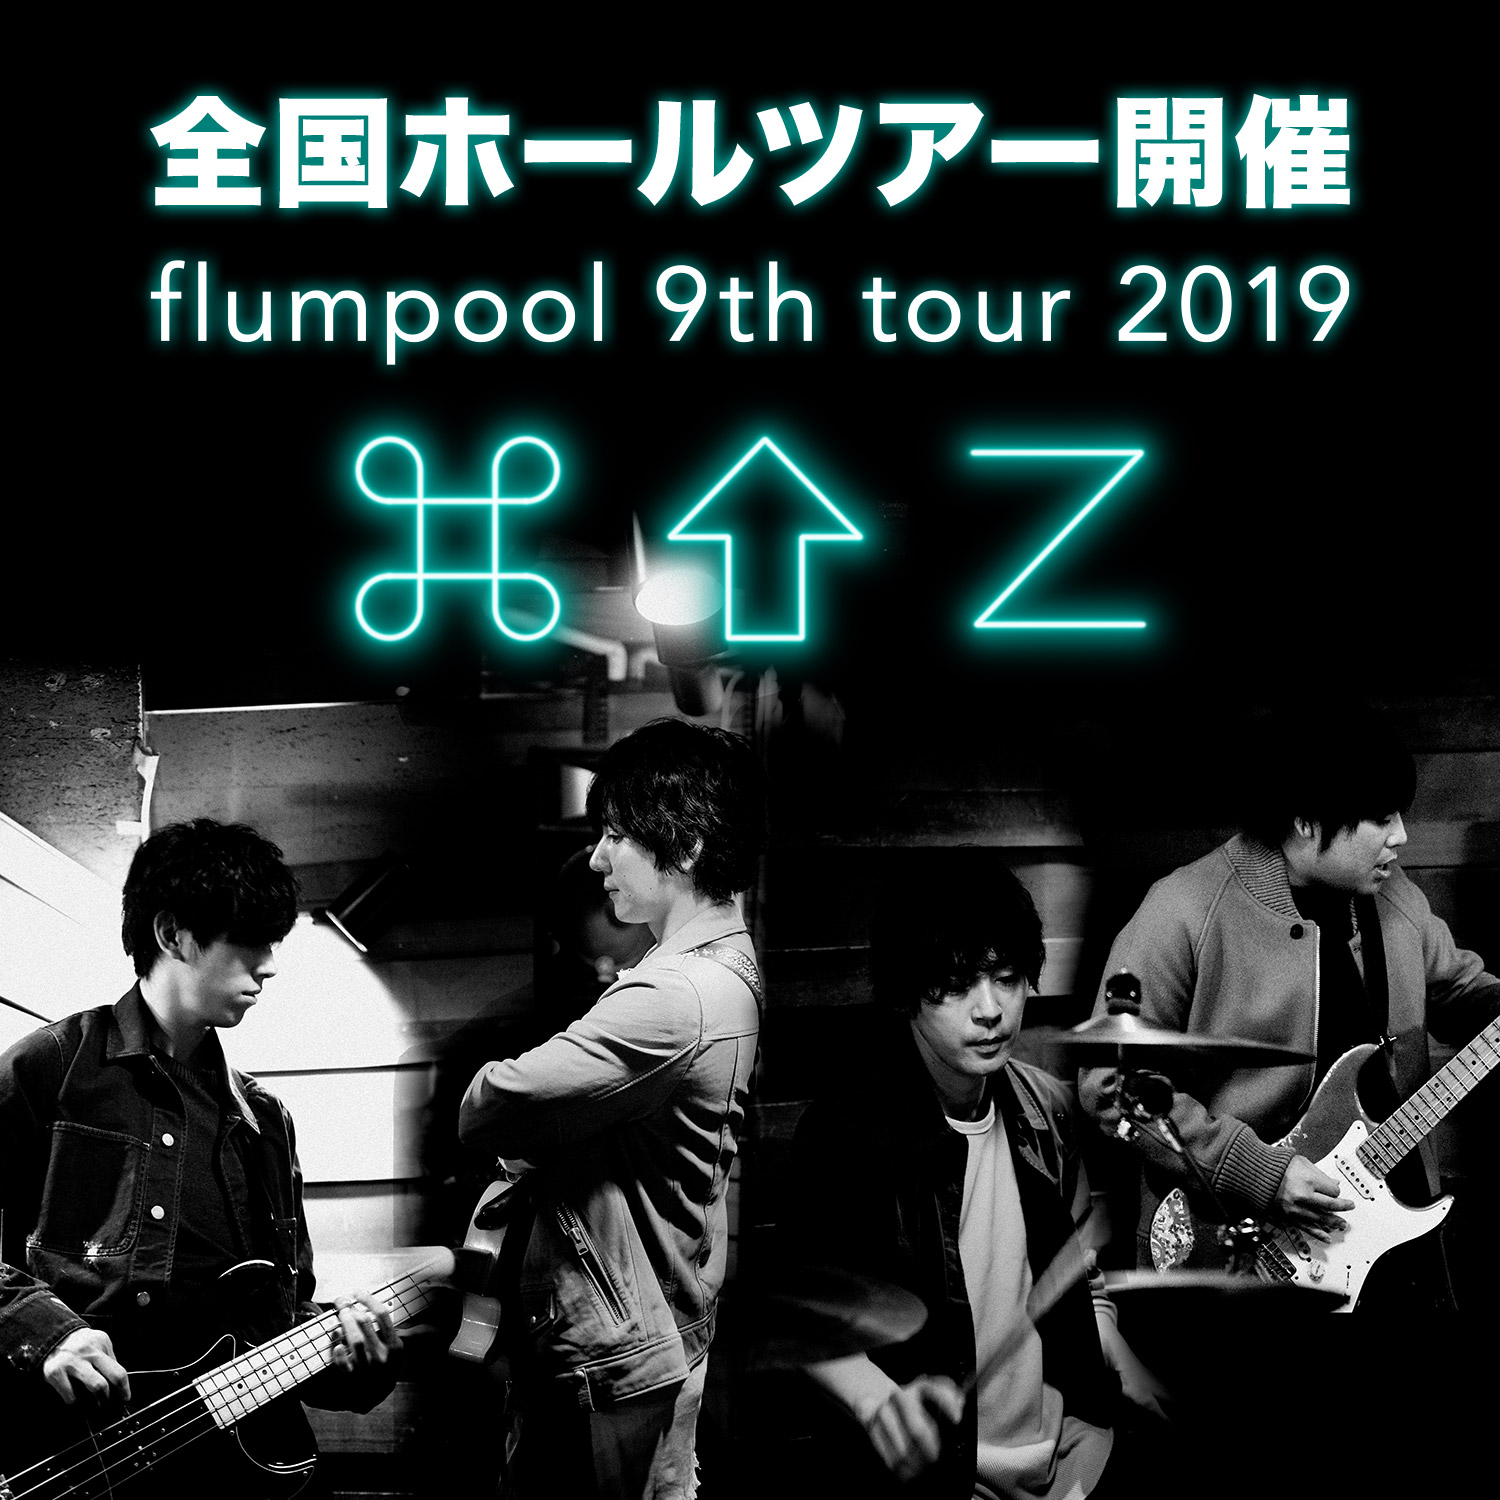 全国ホールツアー flumpool 9th tour 2019「⌘⇧Z」開催